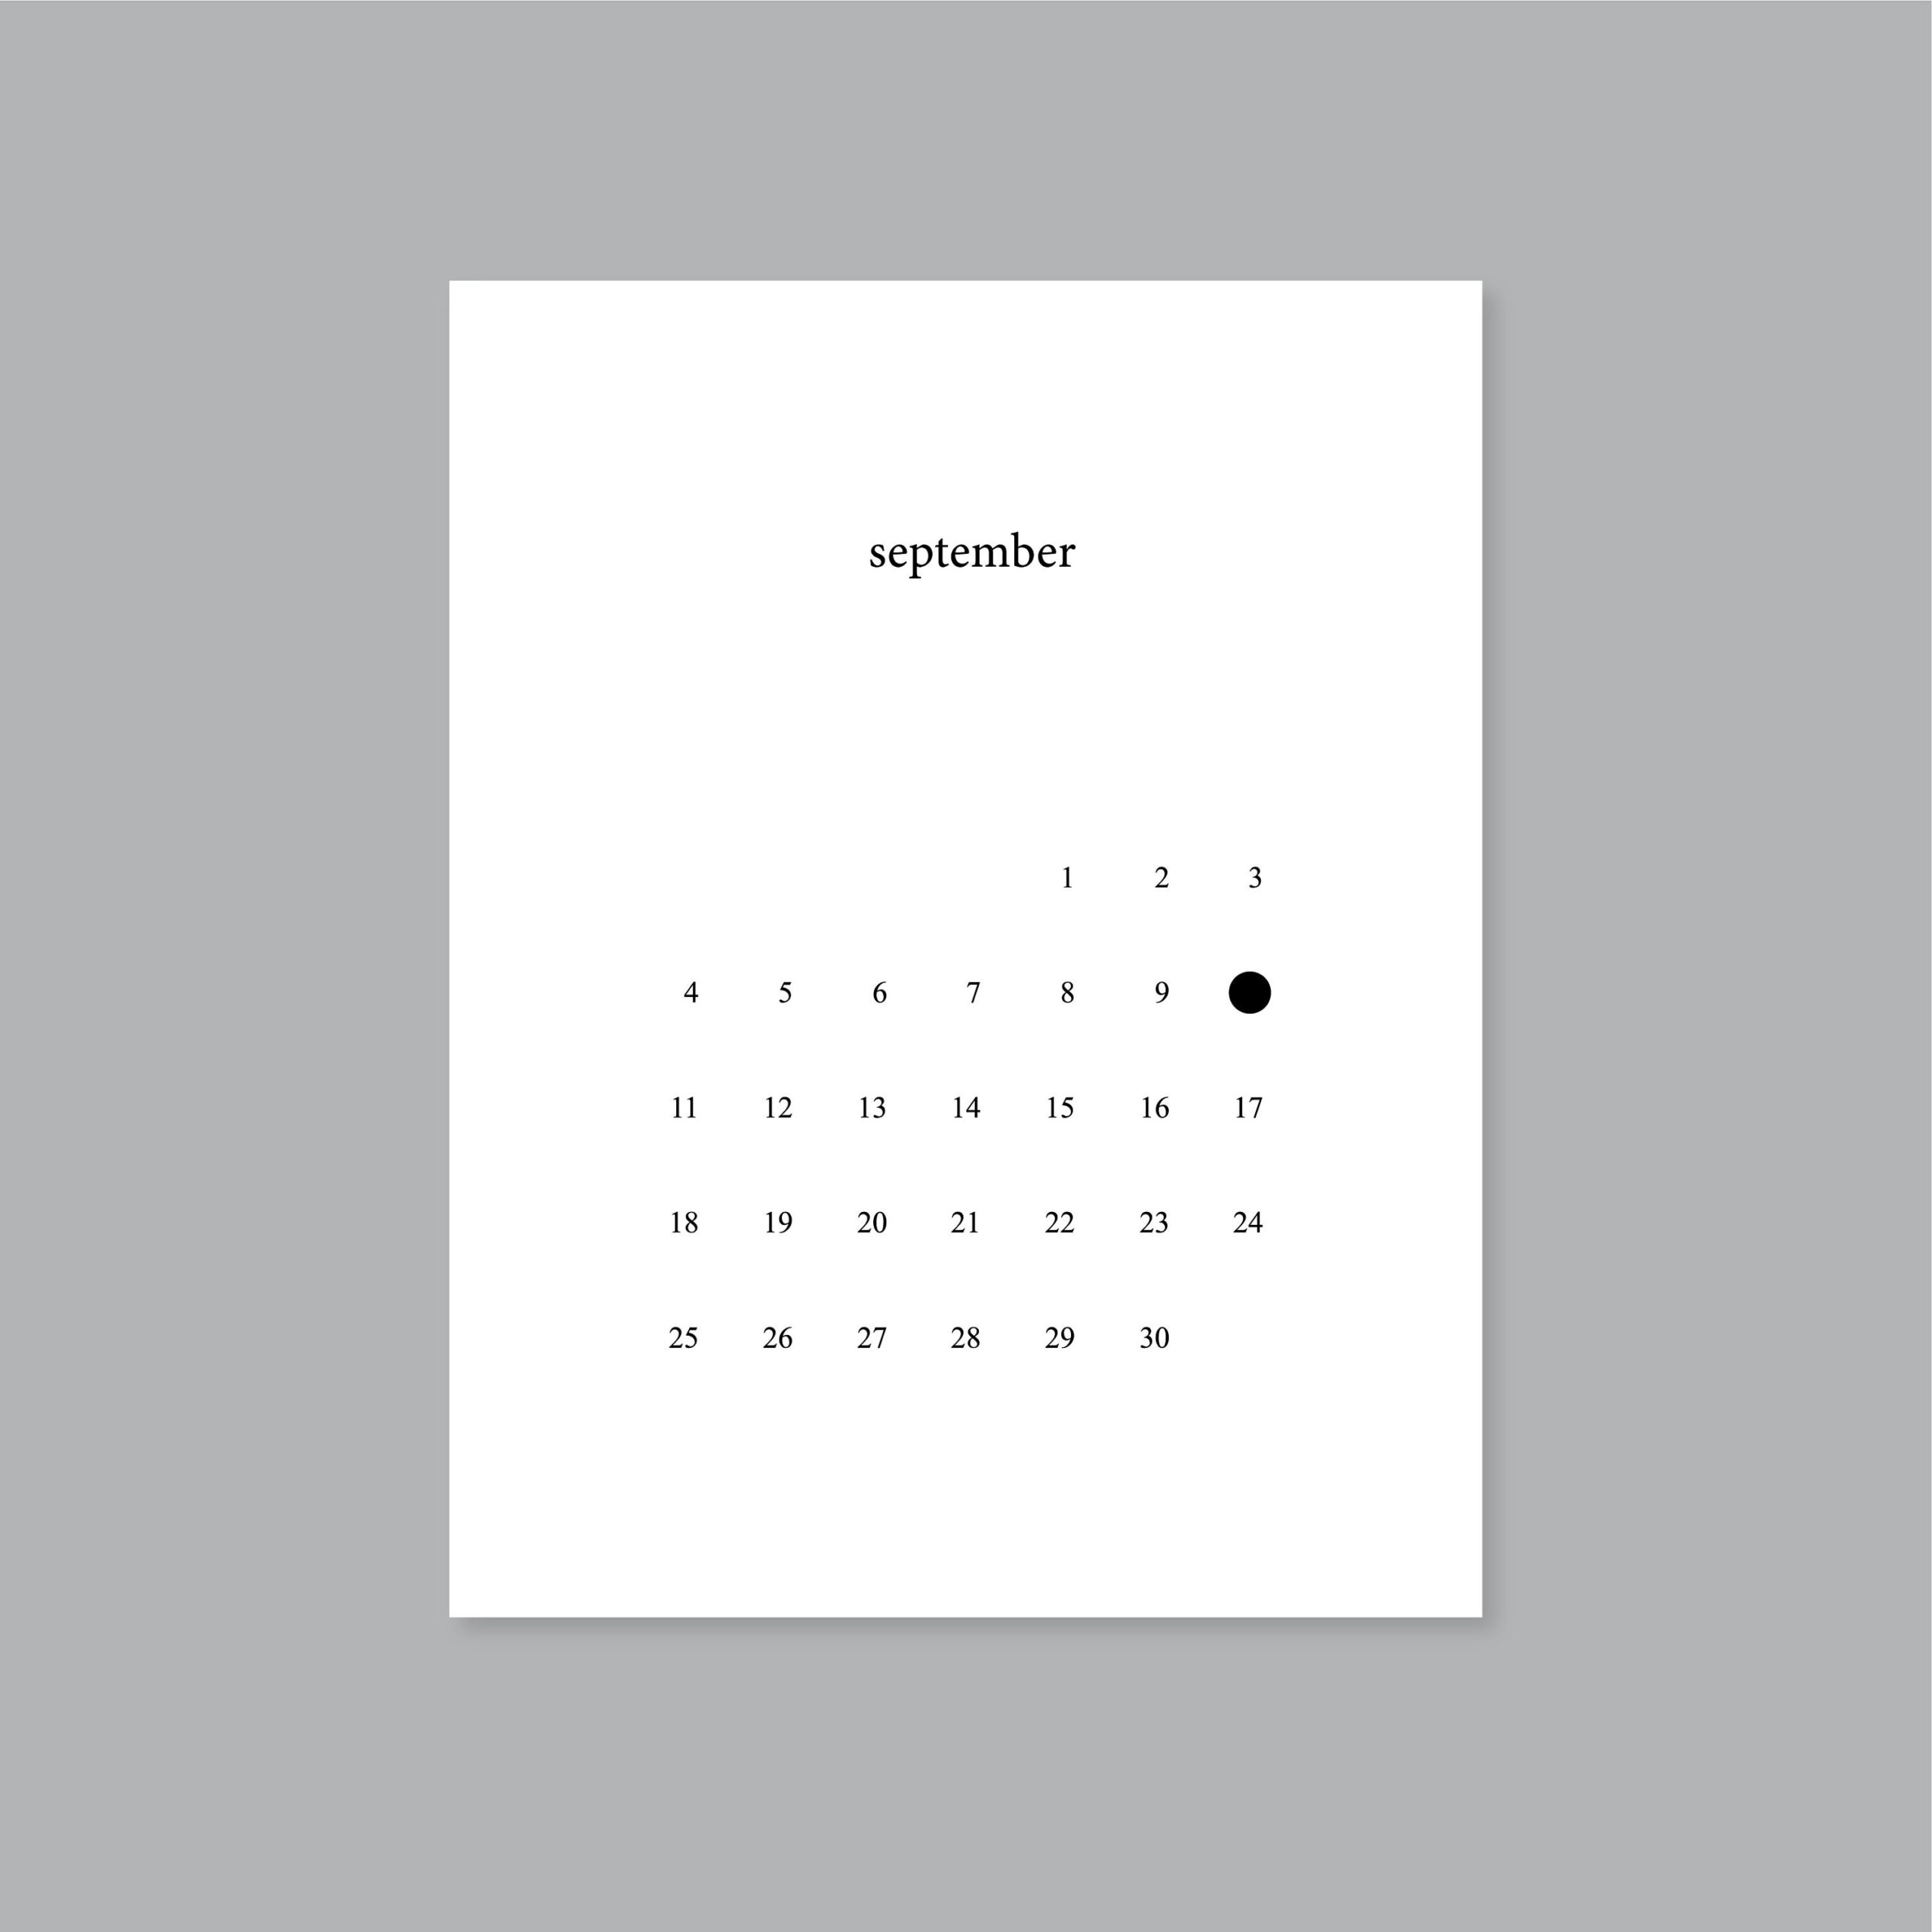 2022 Calendar Planner Printable Full Moon Calendar Letter A4 | Etsy intended for Full Moon Calendar 2022 Printable